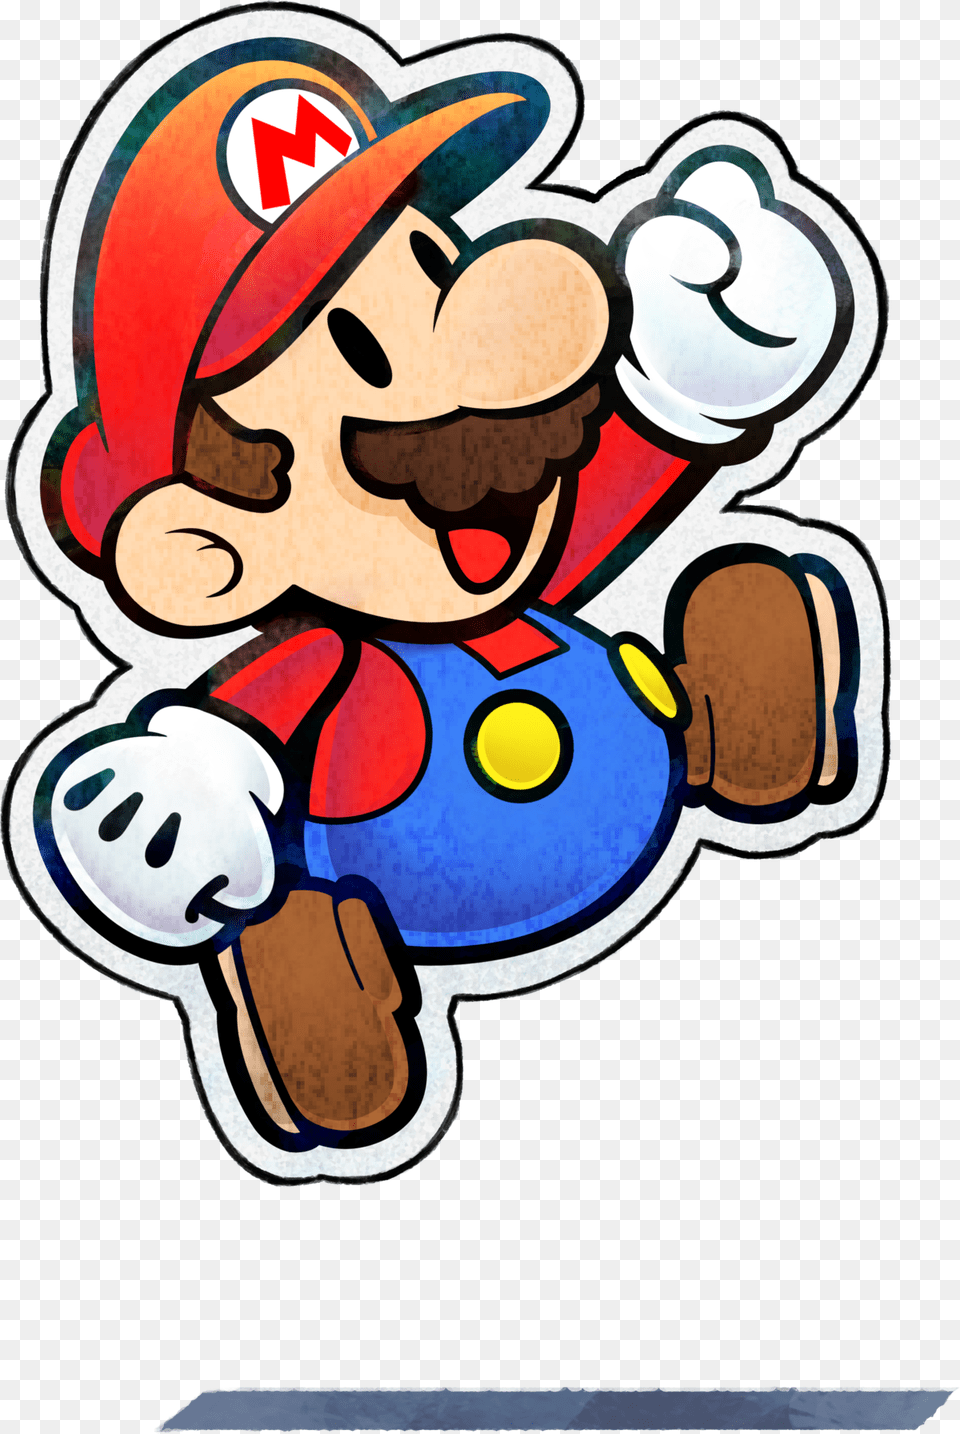 Paper Mario Mario Amp Luigi Paper Jam Paper Mario, Game, Super Mario, Dynamite, Weapon Free Png